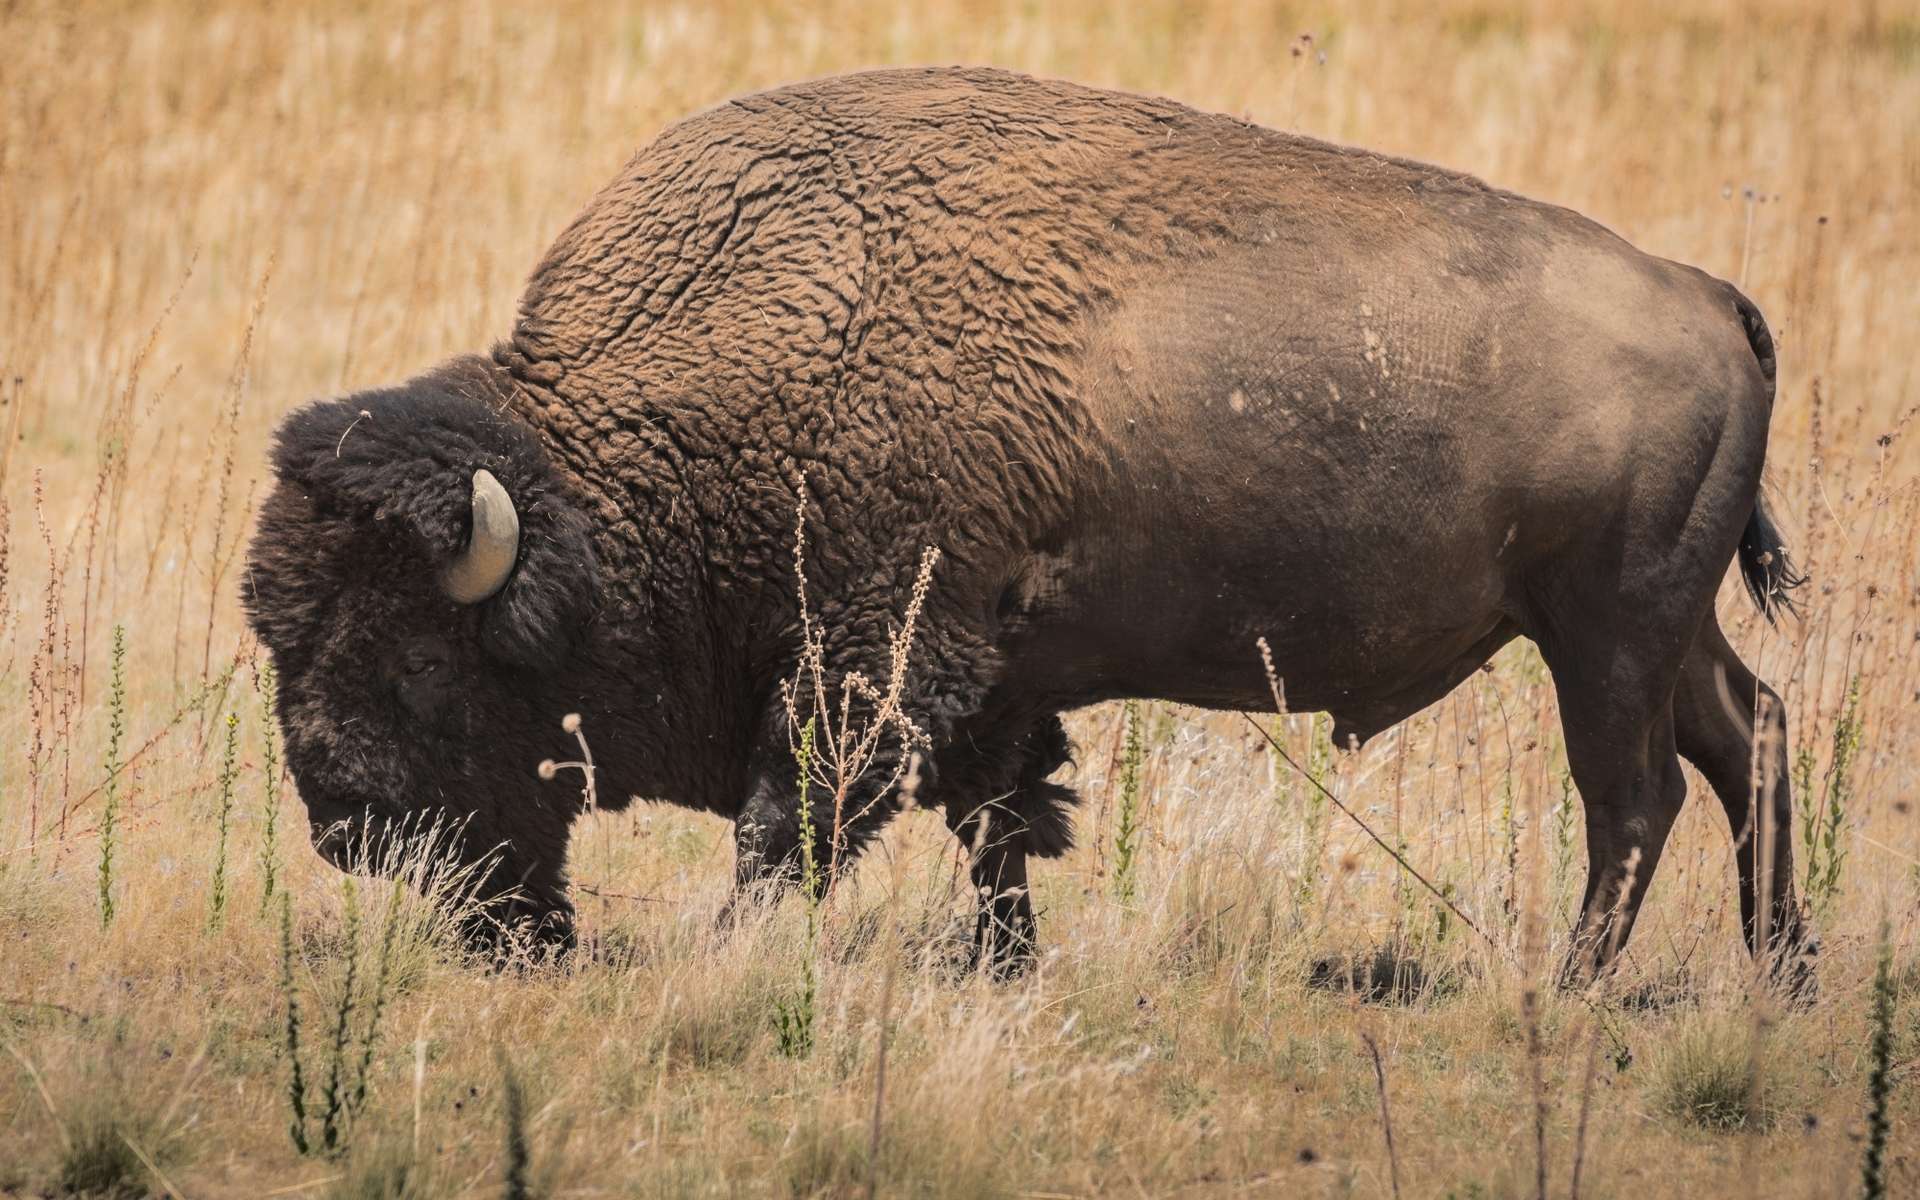 Ce bison est génétiquement proche de ceux qui peuplaient l'Amérique, l'Europe et les steppes russes il y a une vingtaine de milliers d'années. © Andrew Smith, Flickr - Licence Creative Commons (by-nc-sa 2.0)